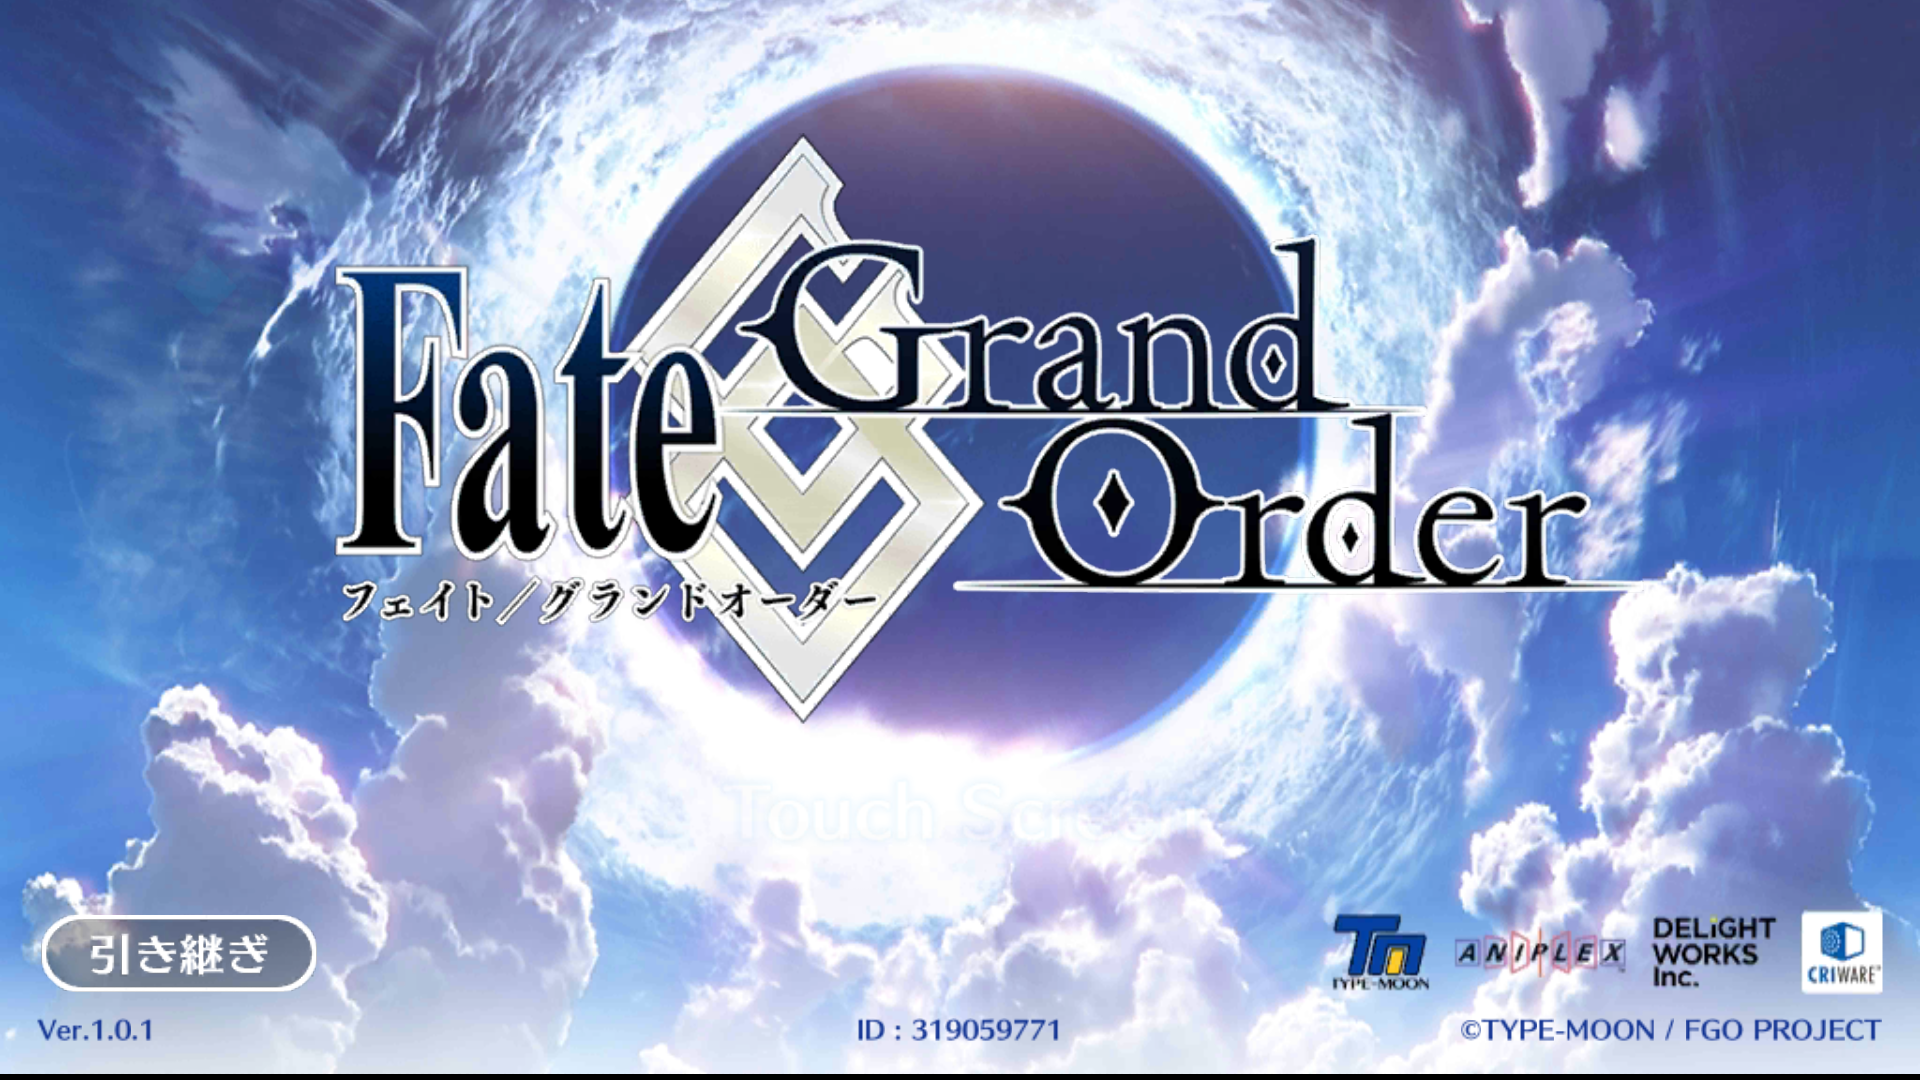 Fate/Grand Order 